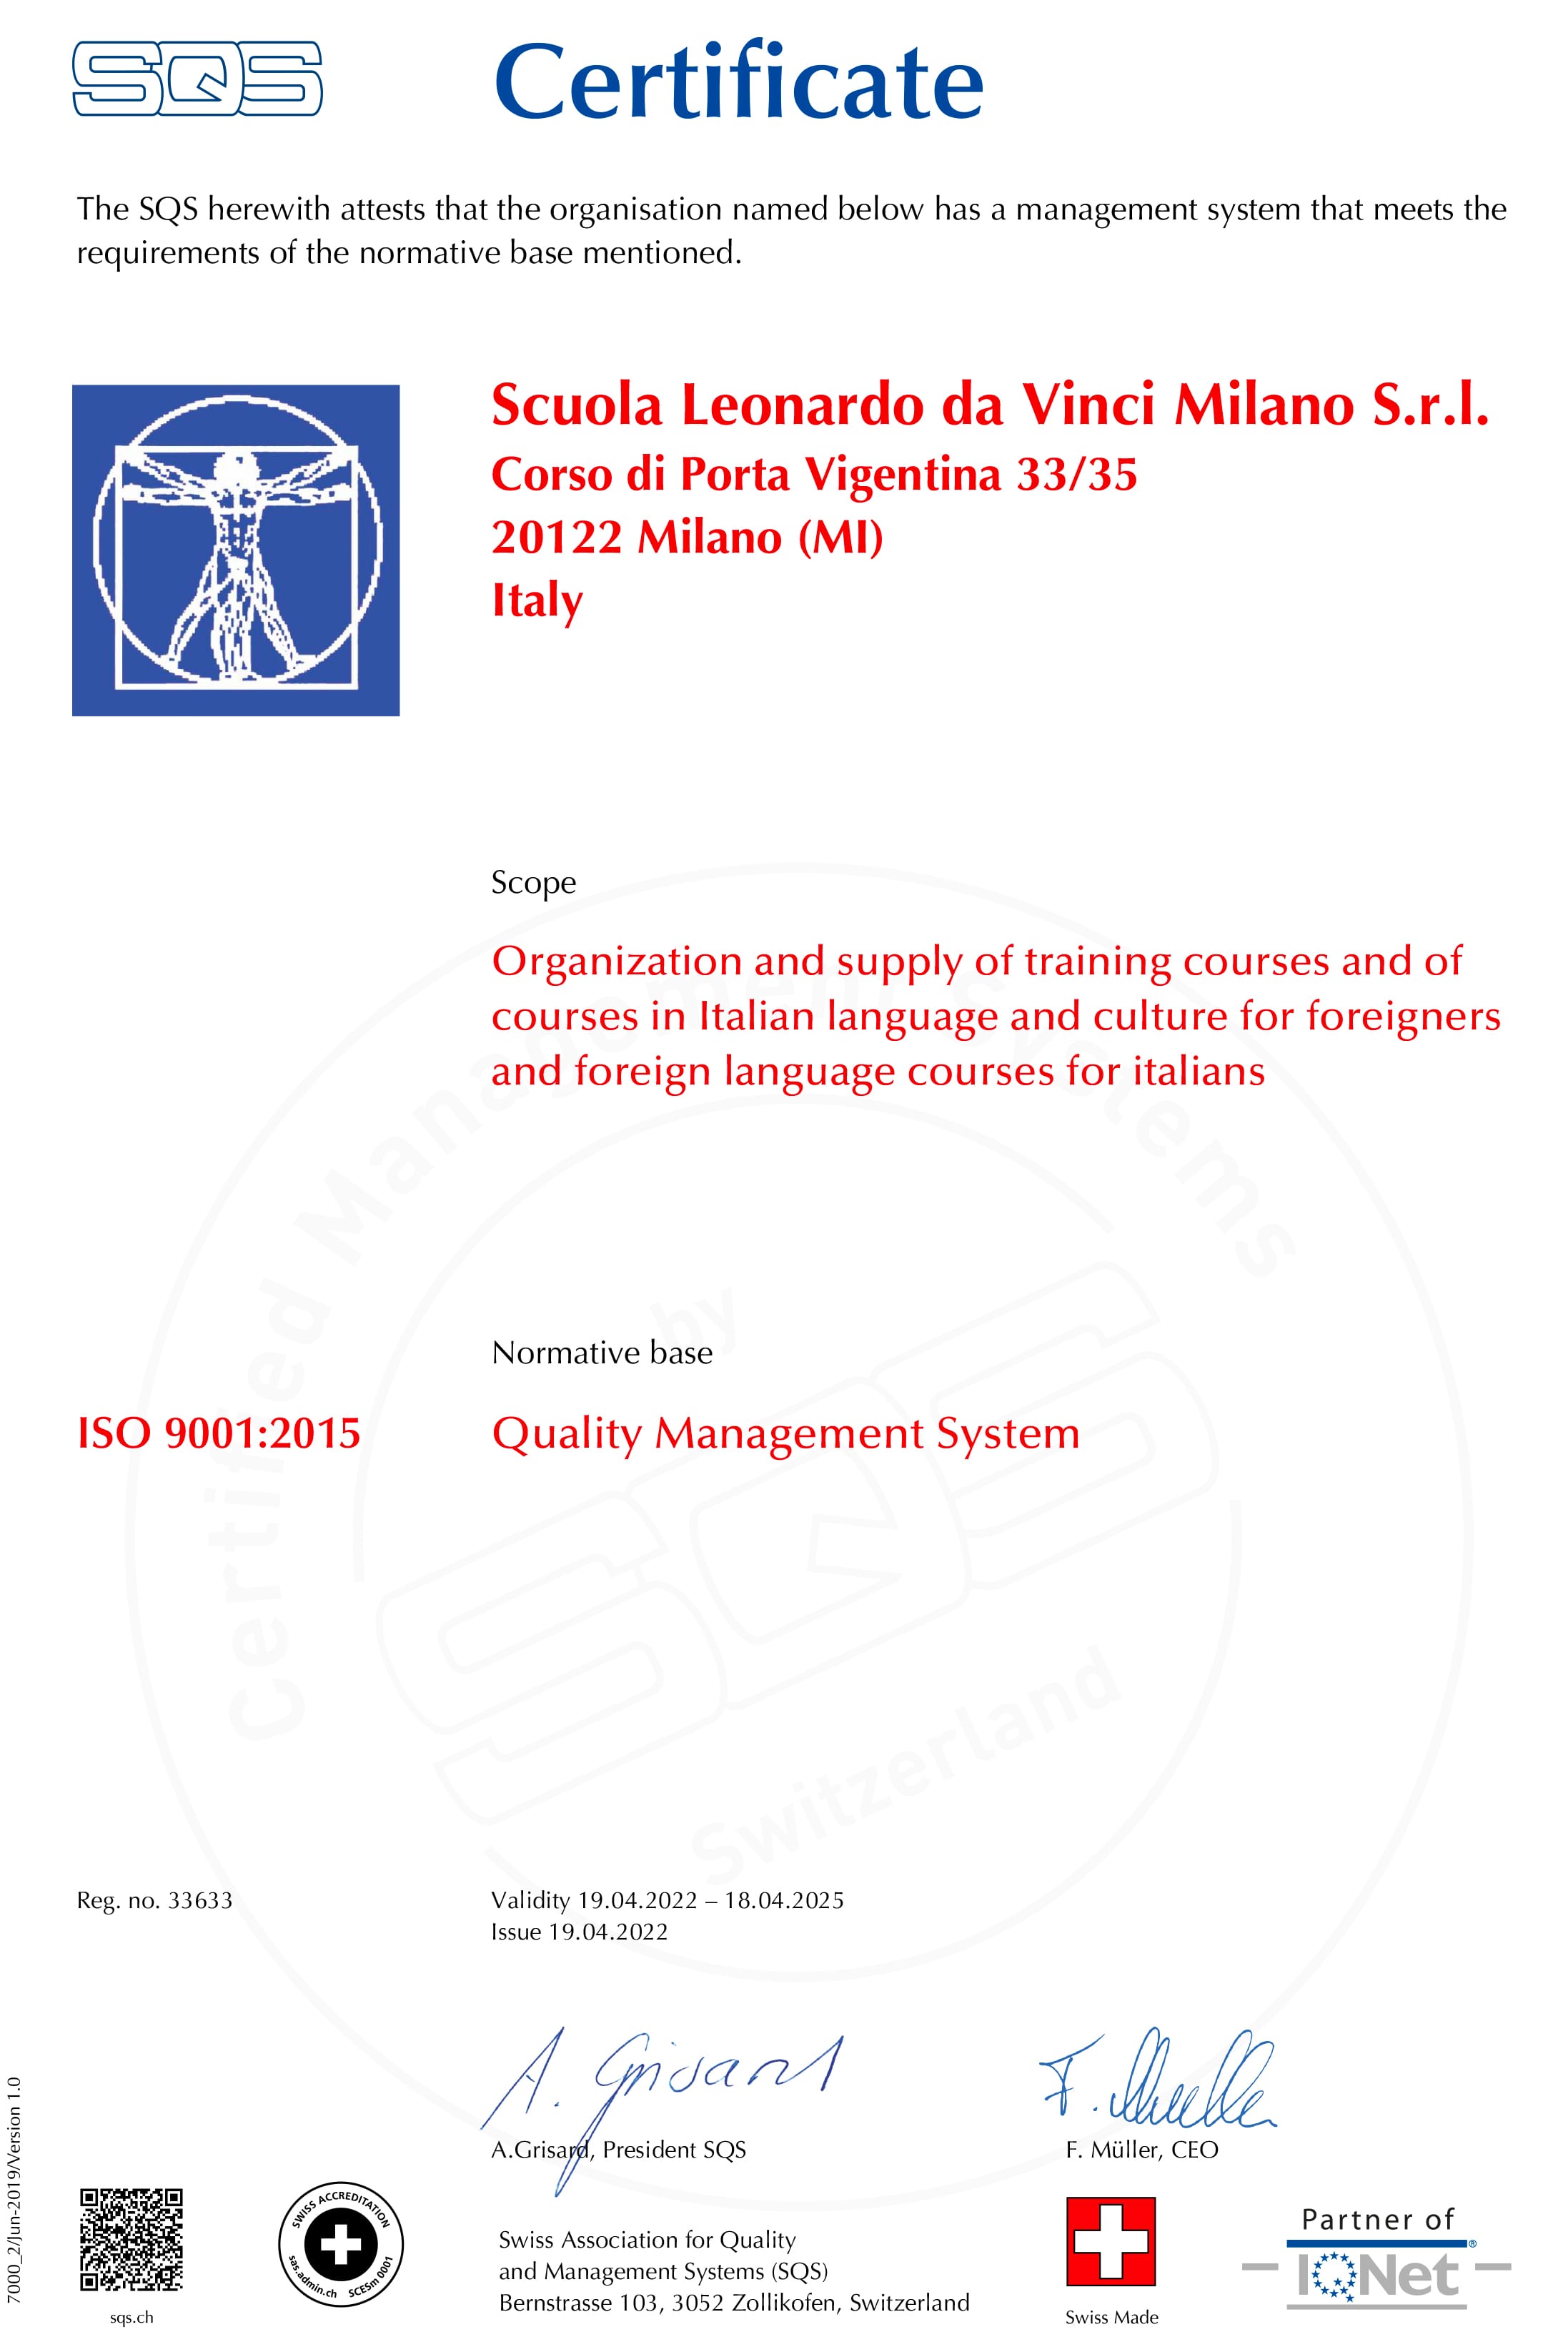 La nostra scuola italiana a Milano è certificata per soddisfare ISO 9001: 2015, lo standard internazionale riconosciuto per i sistemi di gestione della qualità